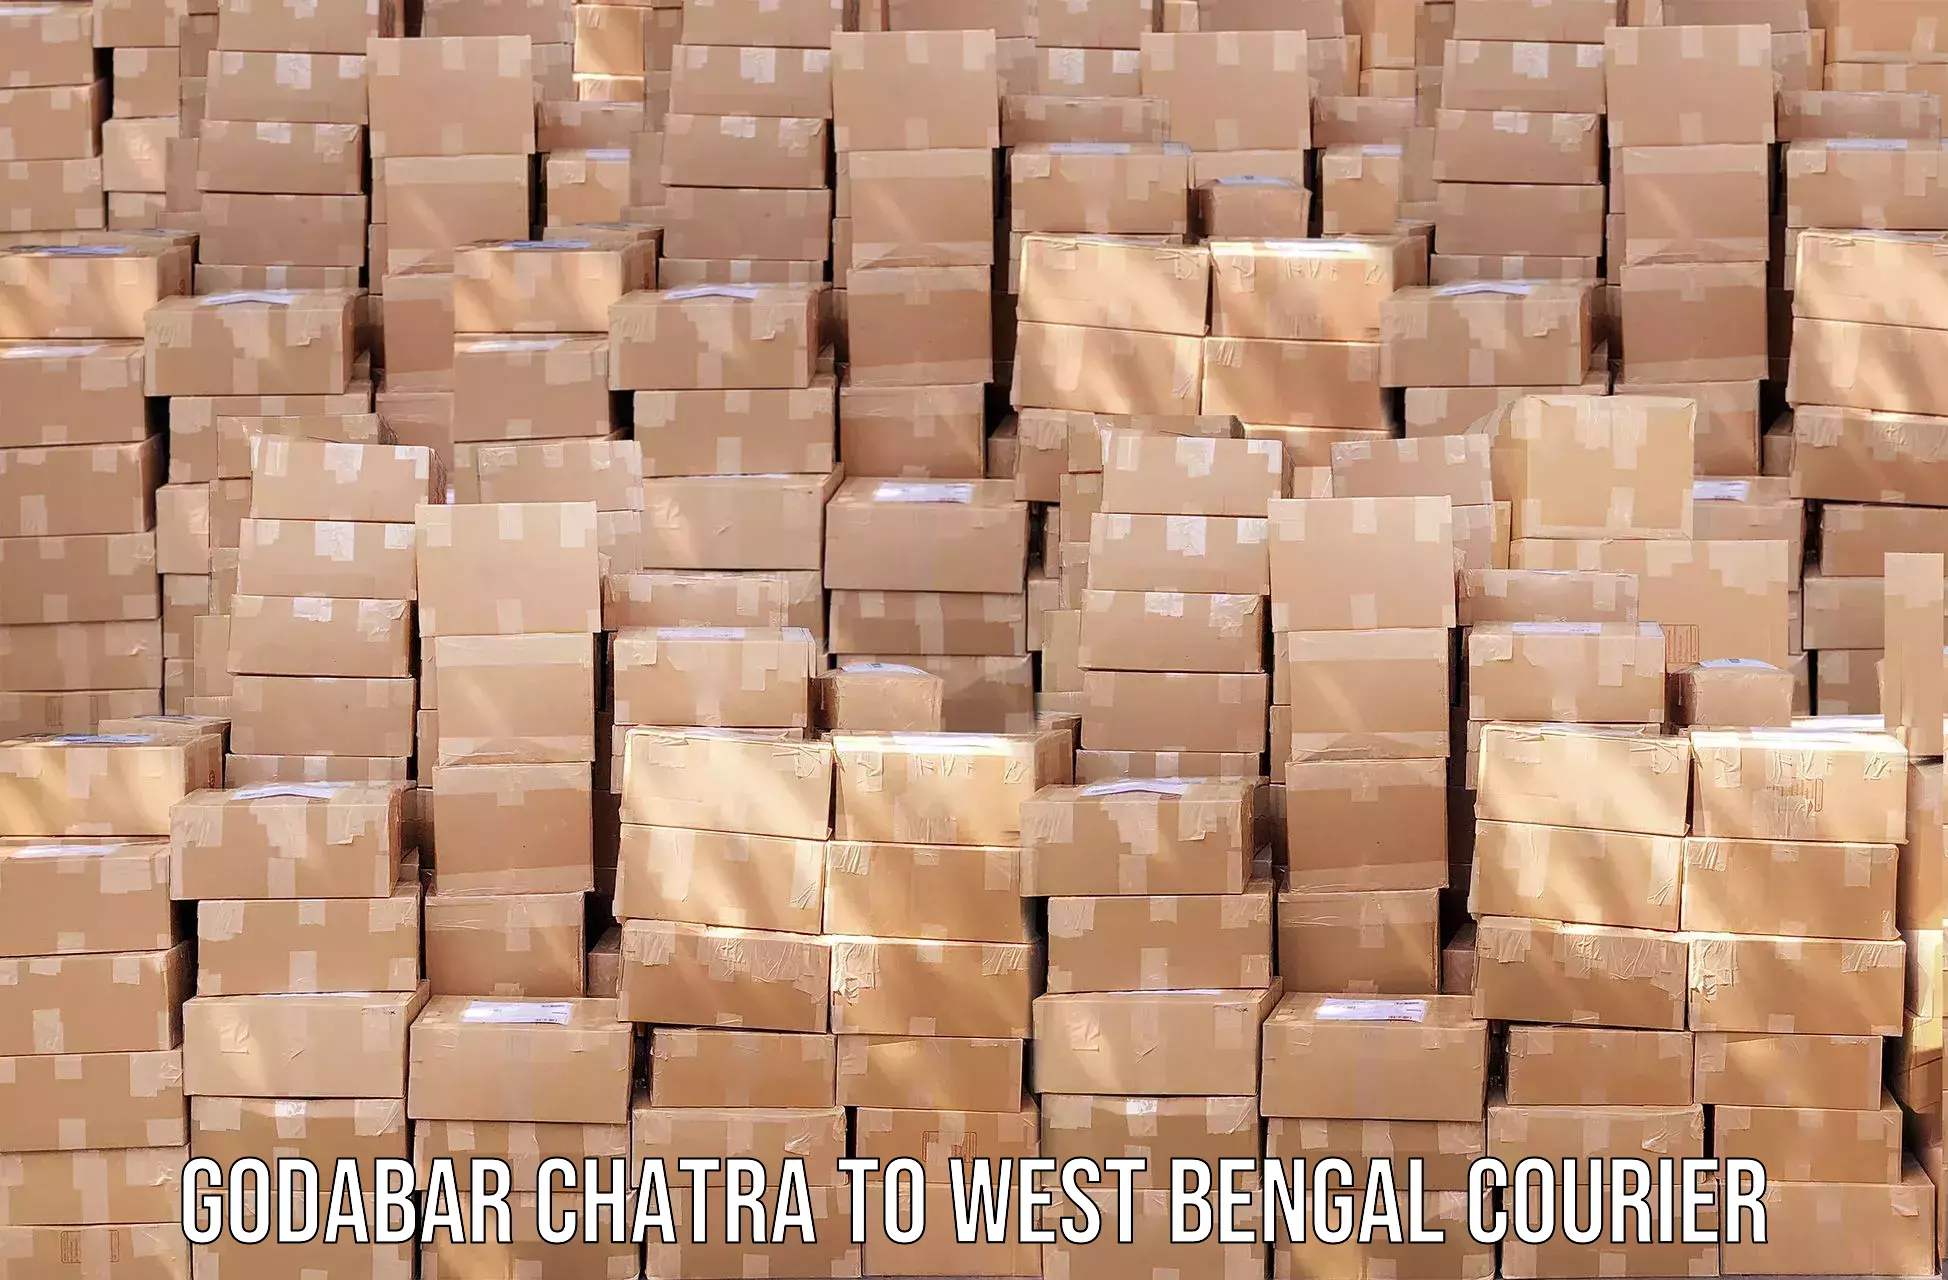 Express courier capabilities in Godabar Chatra to Maheshtala